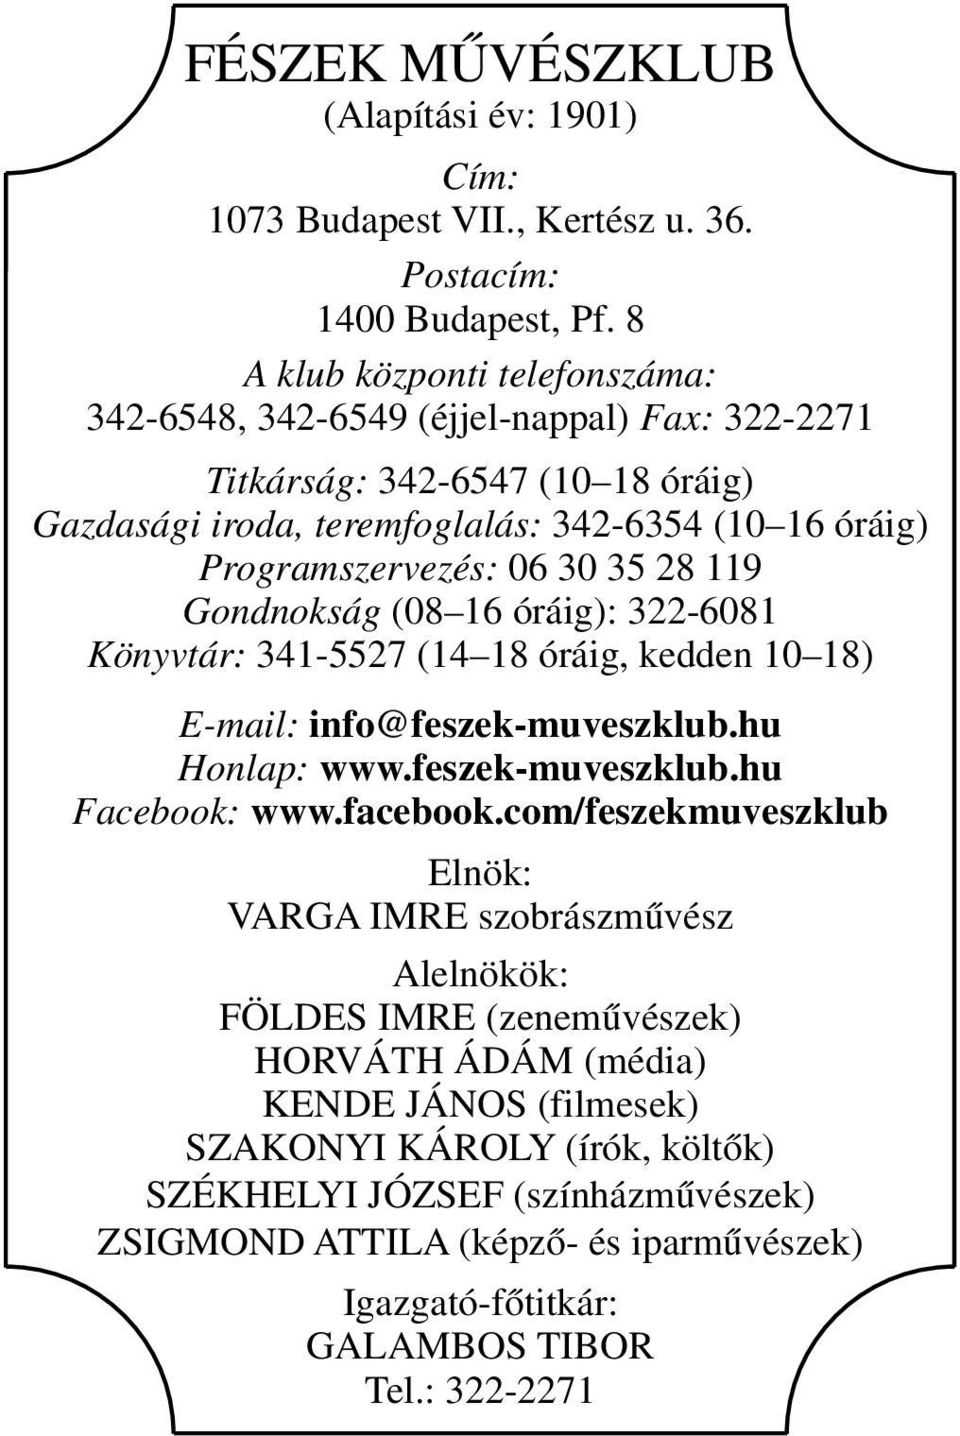 35 28 119 Gondnokság (08 16 óráig): 322-6081 Könyvtár: 341-5527 (14 18 óráig, kedden 10 18) E-mail: info@feszek-muveszklub.hu Honlap: www.feszek-muveszklub.hu Facebook: www.facebook.